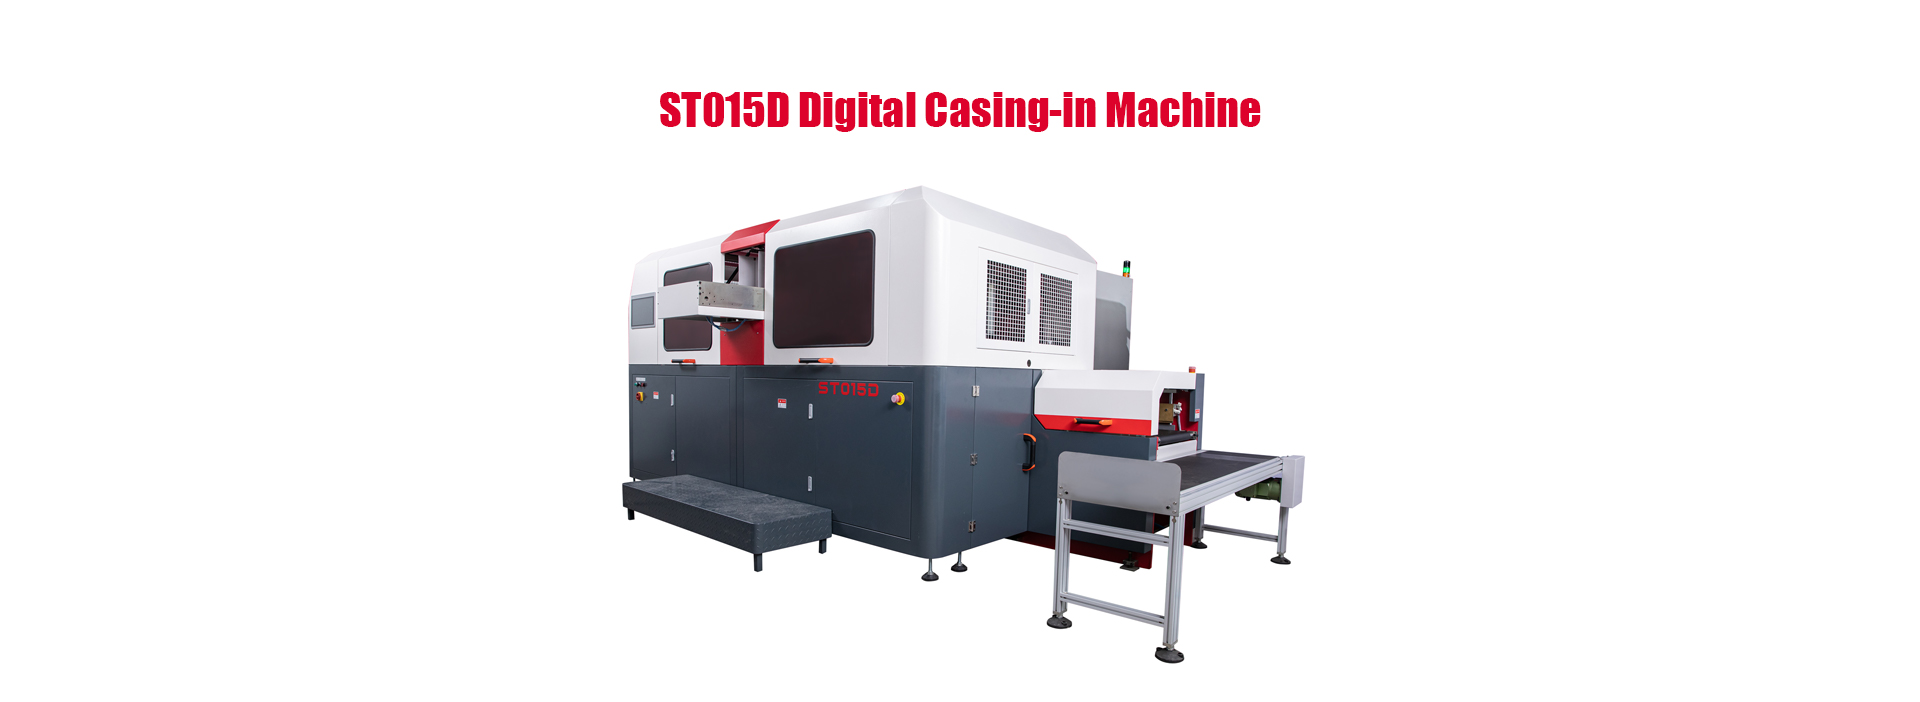 Digital Casing-in Machine